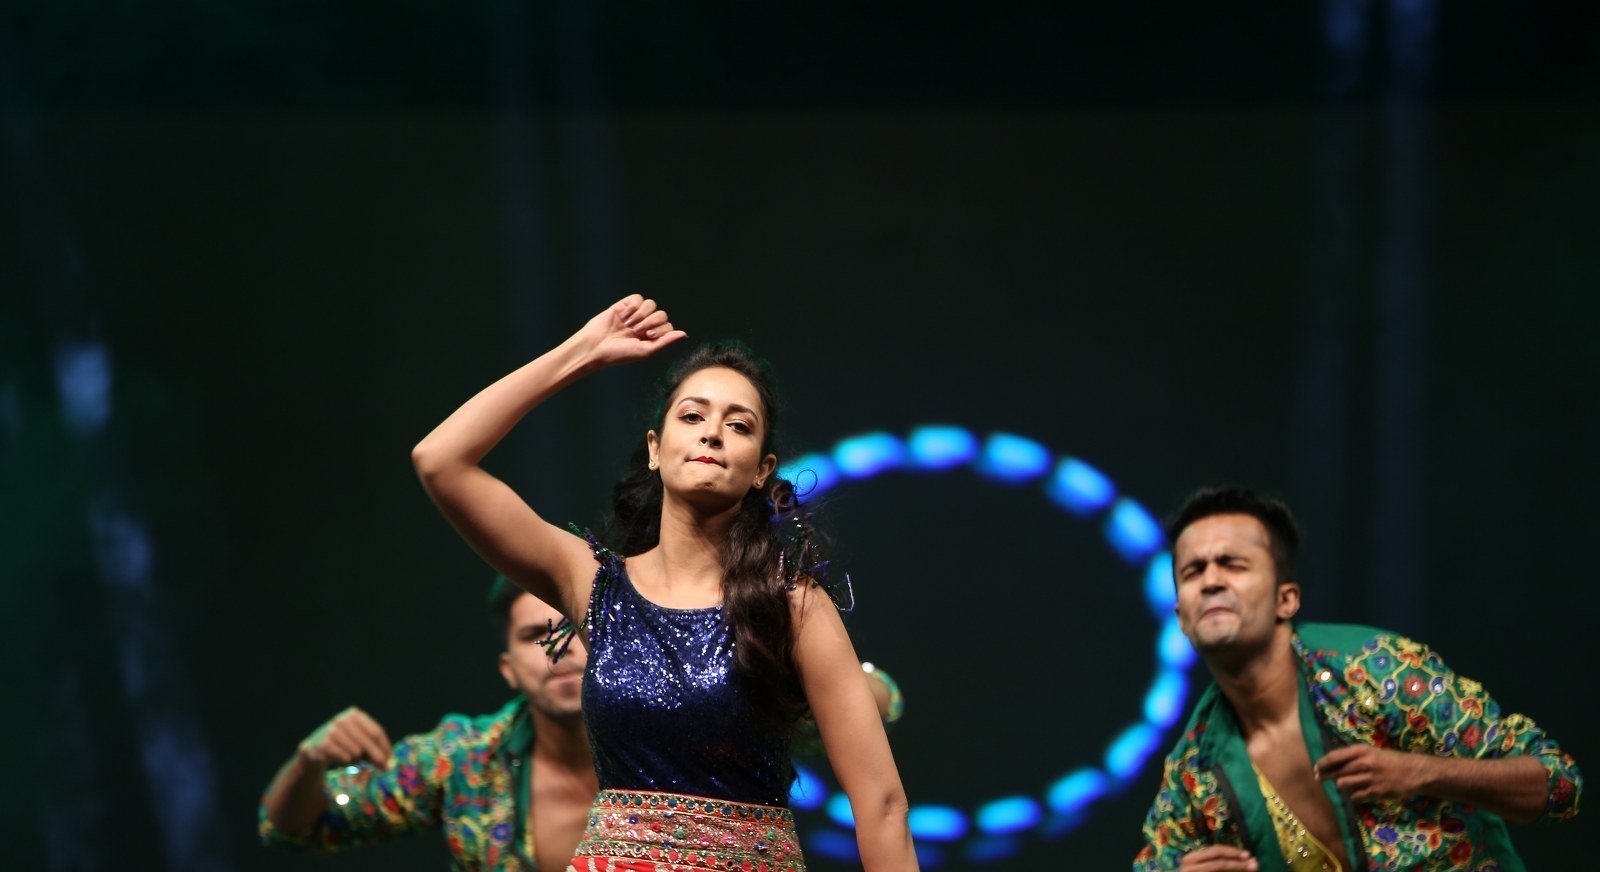 Actress Shanvi Srivastava Hot Dance Stills From Awards 2019 Set 2